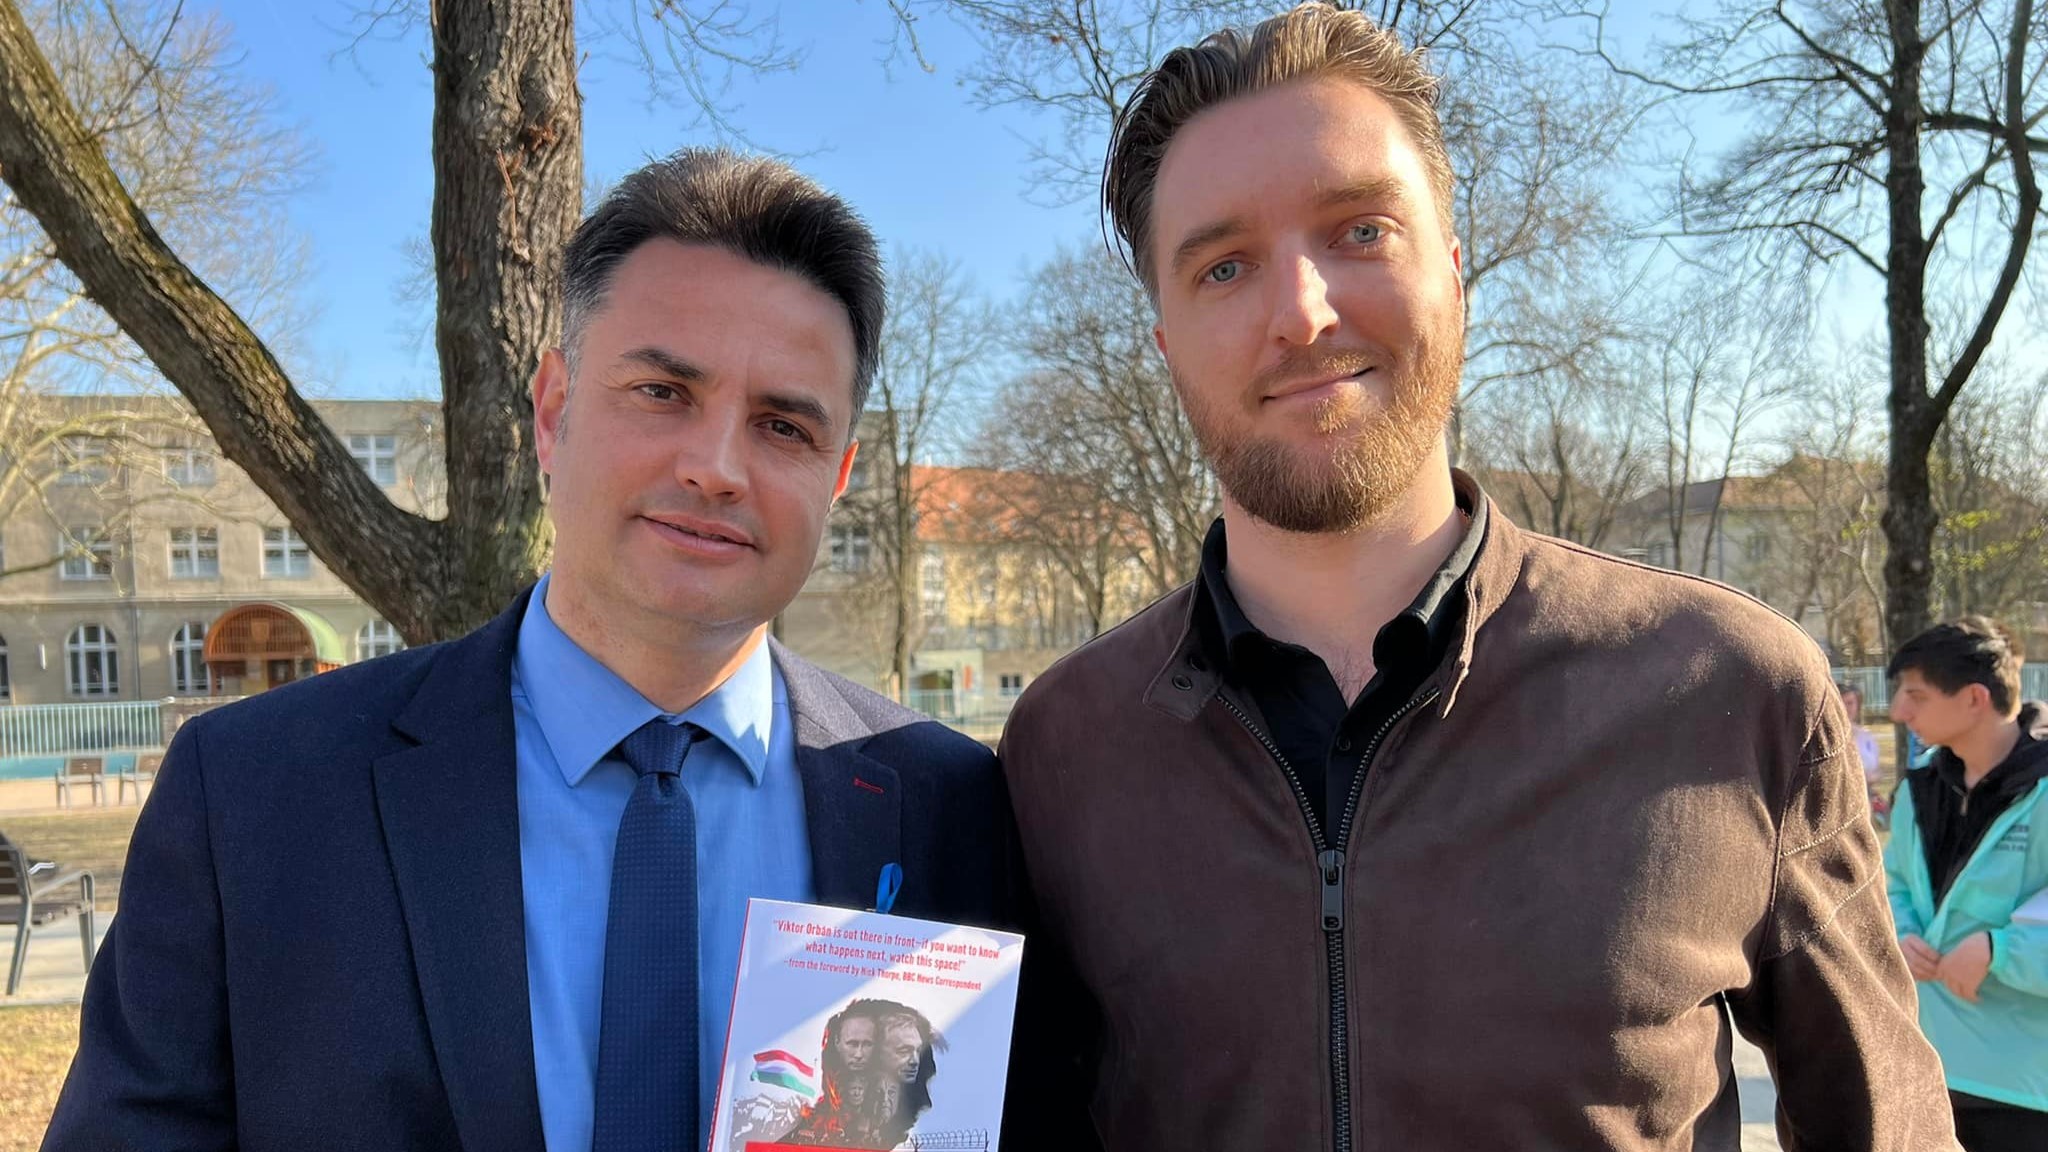 Plágiumgyanúba keveredett az Orbán-rendszerről könyvet író dán újságíró | atlatszo.hu